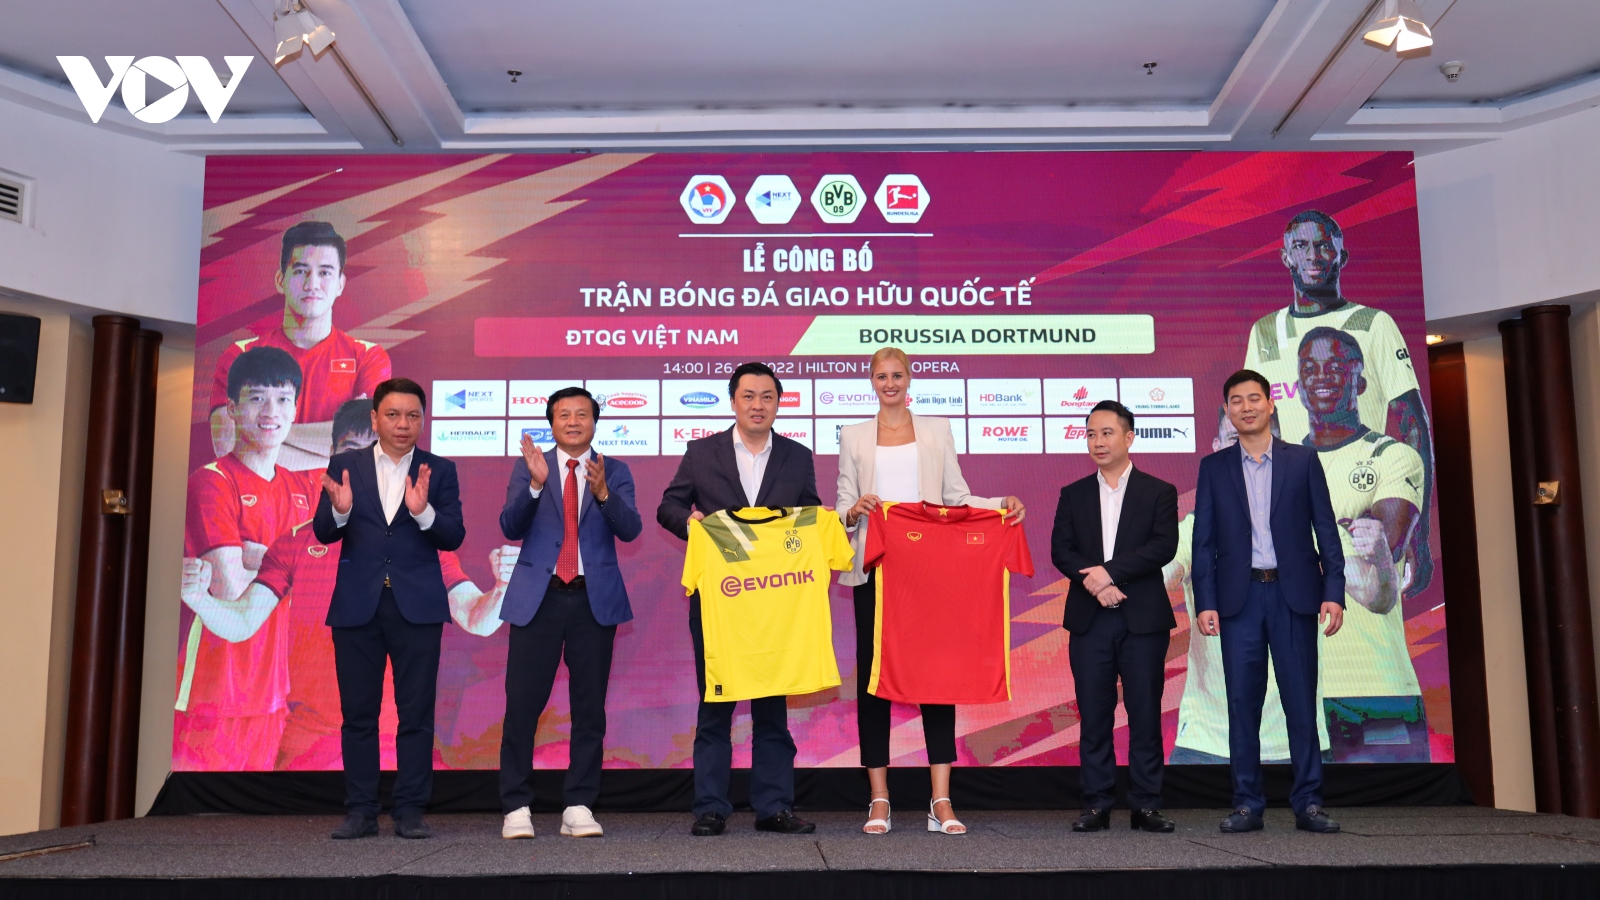 ĐT Việt Nam khởi động chiến dịch săn vàng AFF Cup với "thuốc thử" liều cao Dortmund